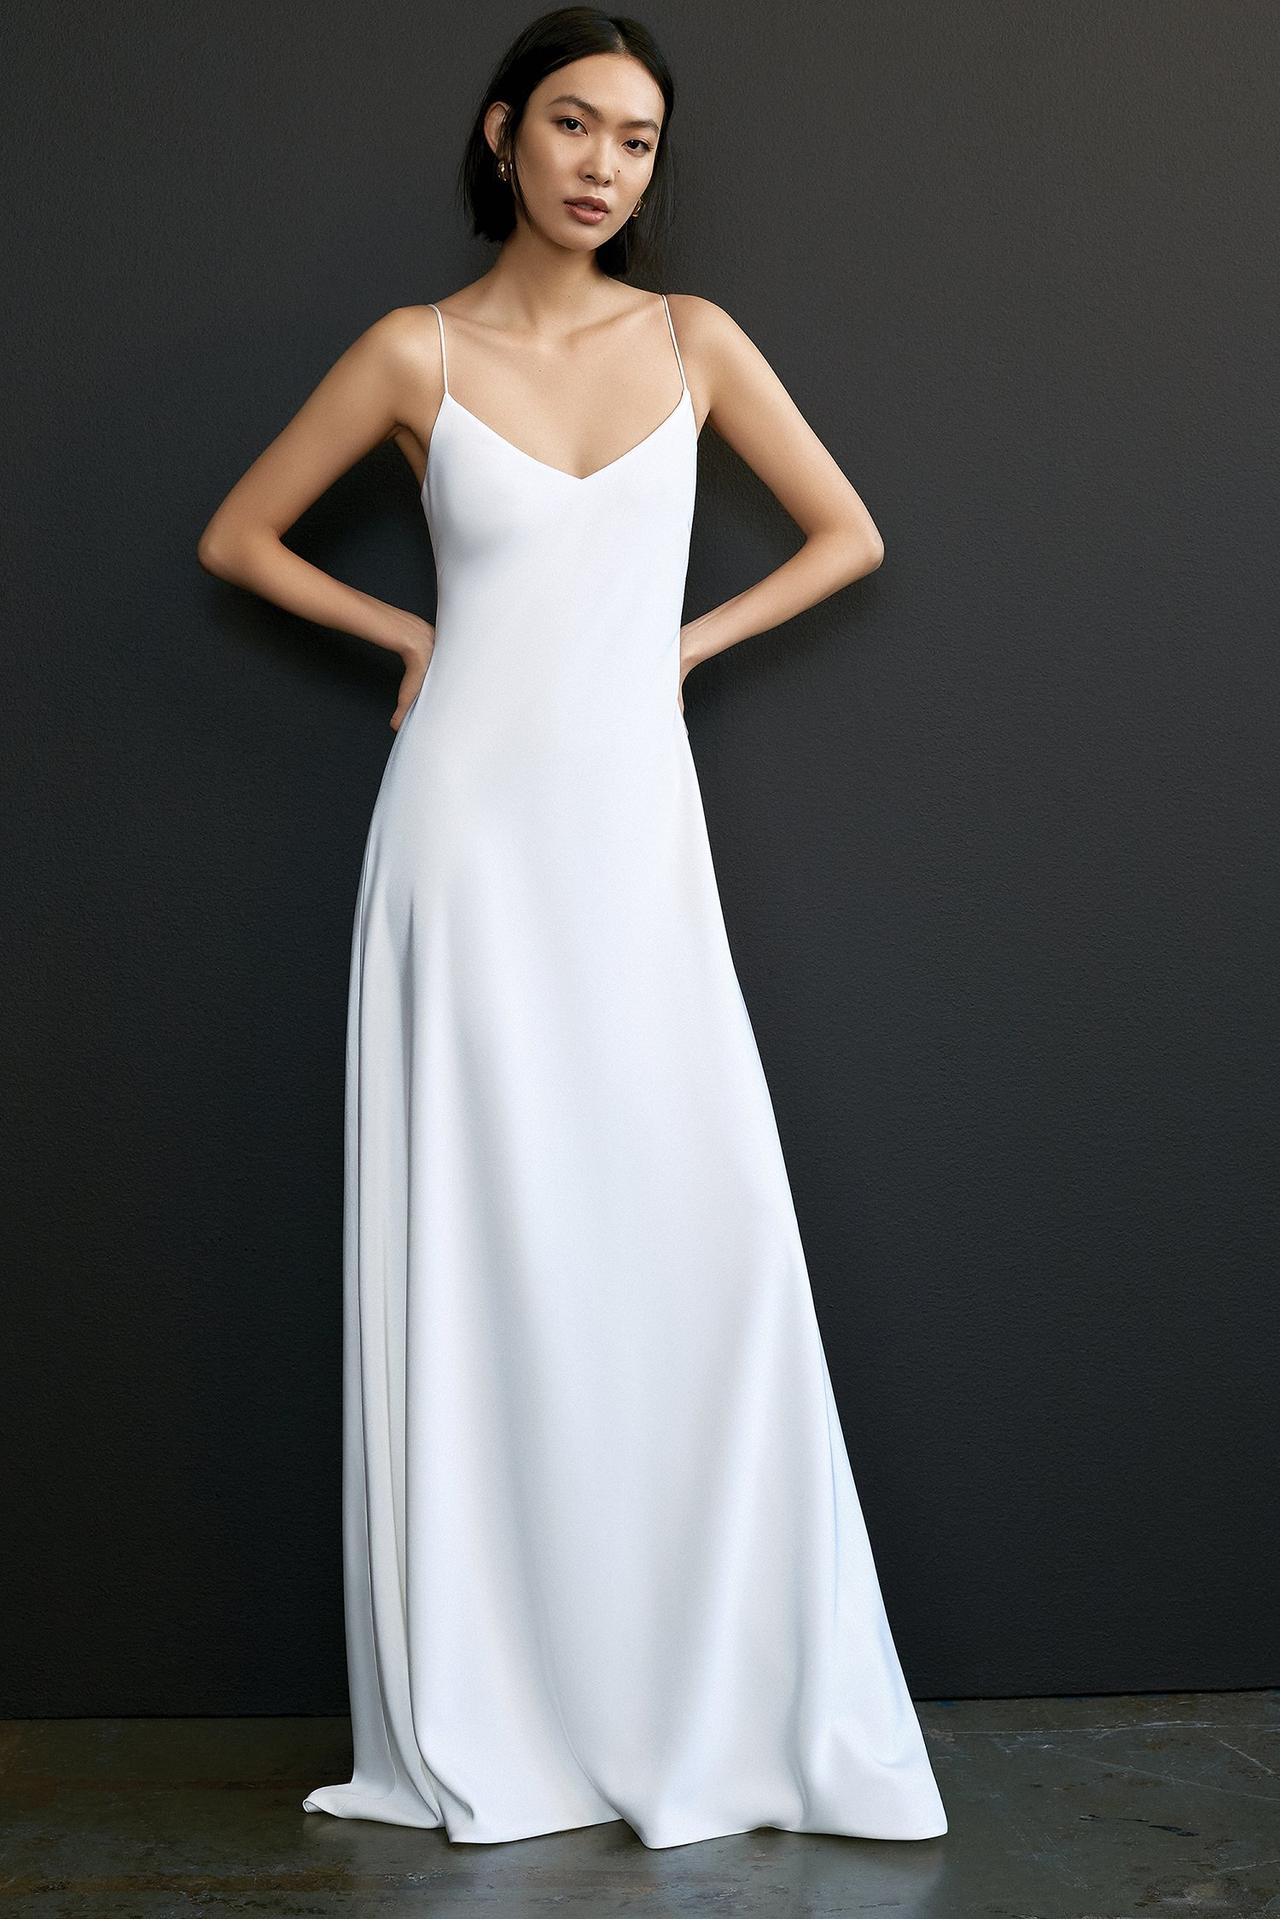 Duchess Satin: An Exquisite Wedding Dress Fabric